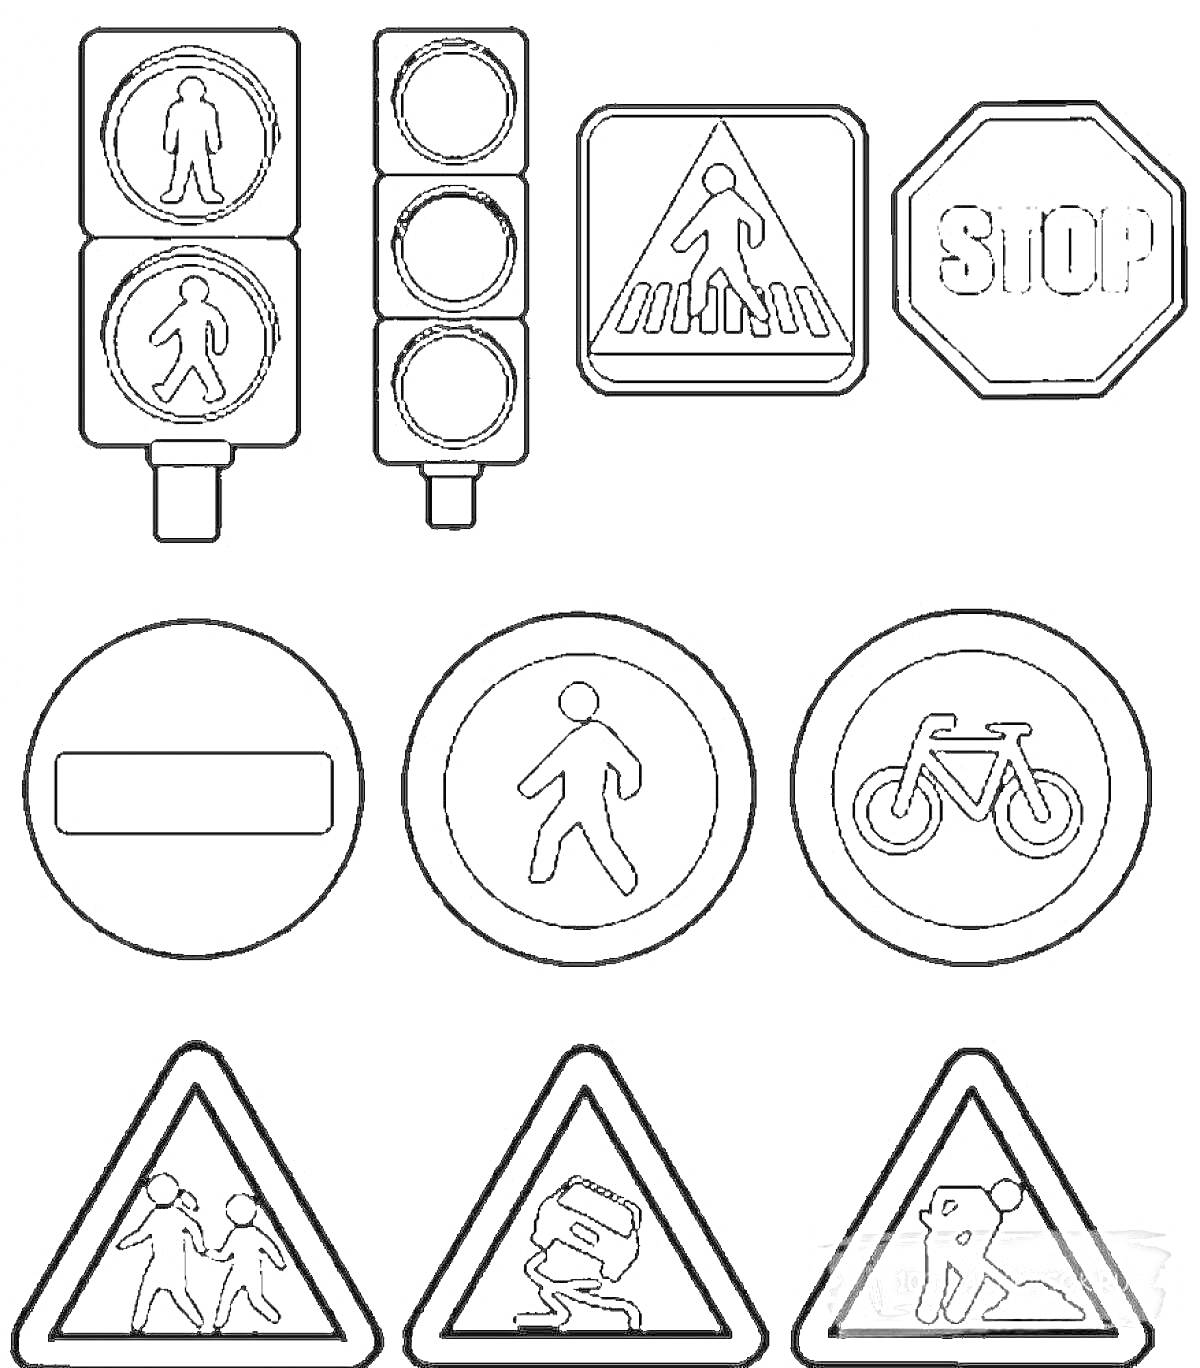 Светофор с пешеходным сигналом, знак пешеходного перехода, знак стоп, знак въезд запрещен, знак пешеходной зоны, знак велодорожки, знак дети, знак скользкая дорога, знак дорожные работы.